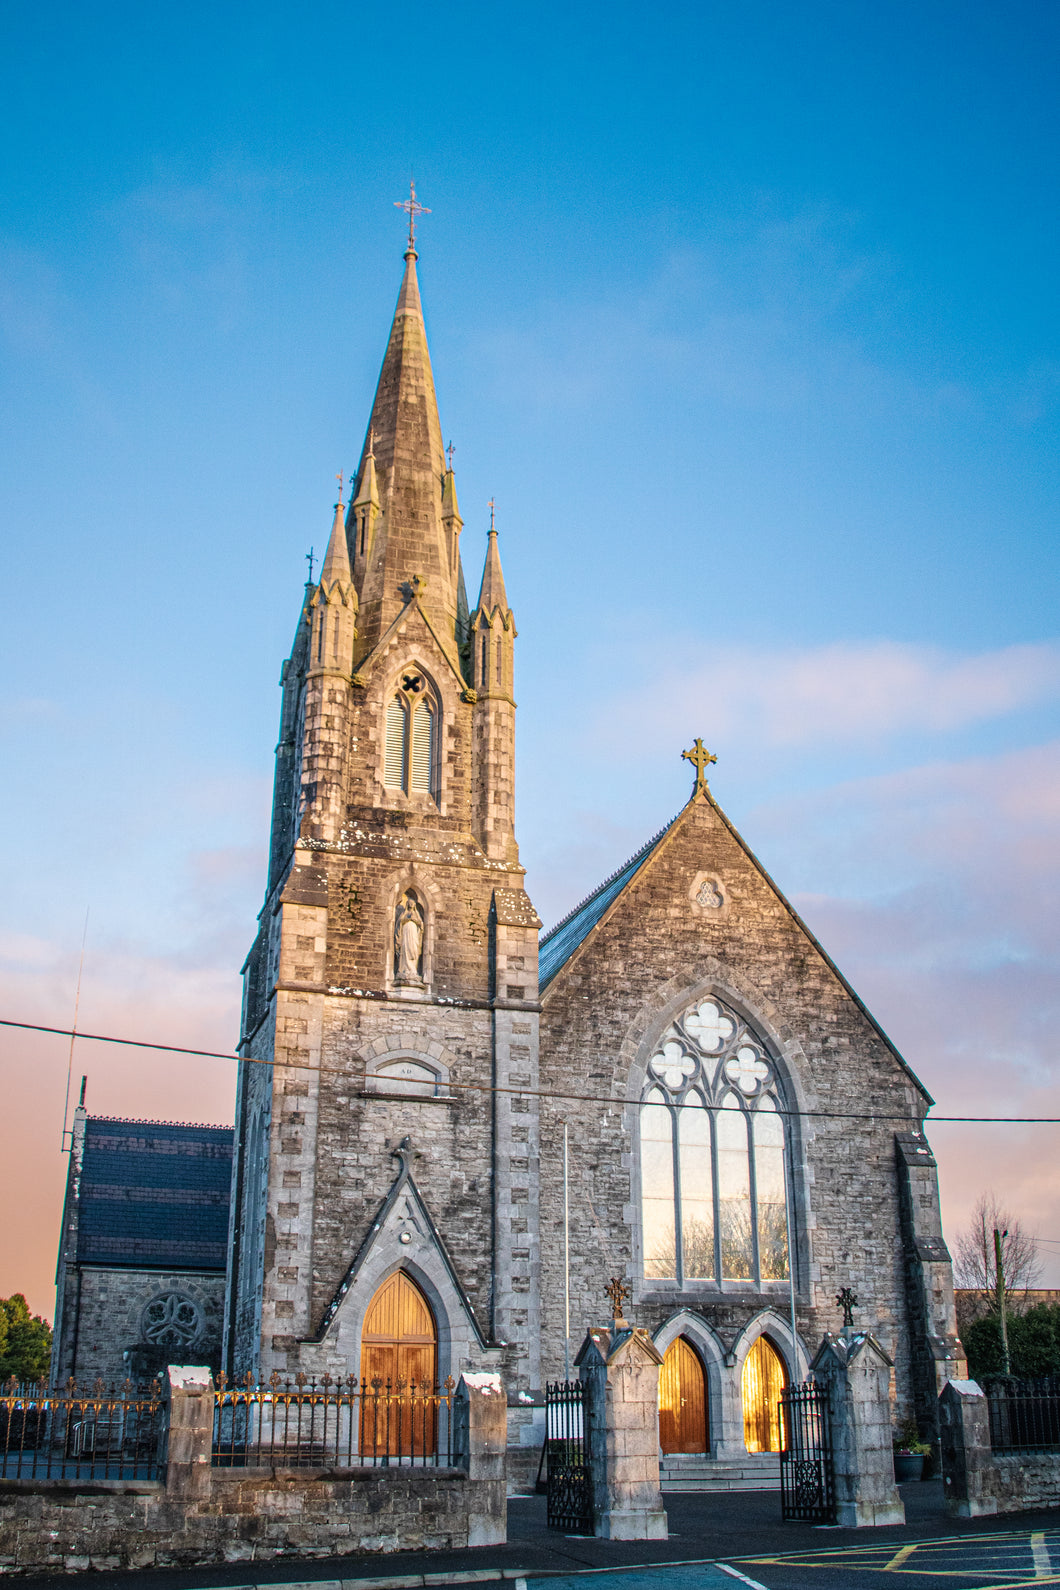 St Mary's Church - Edgeworthstown